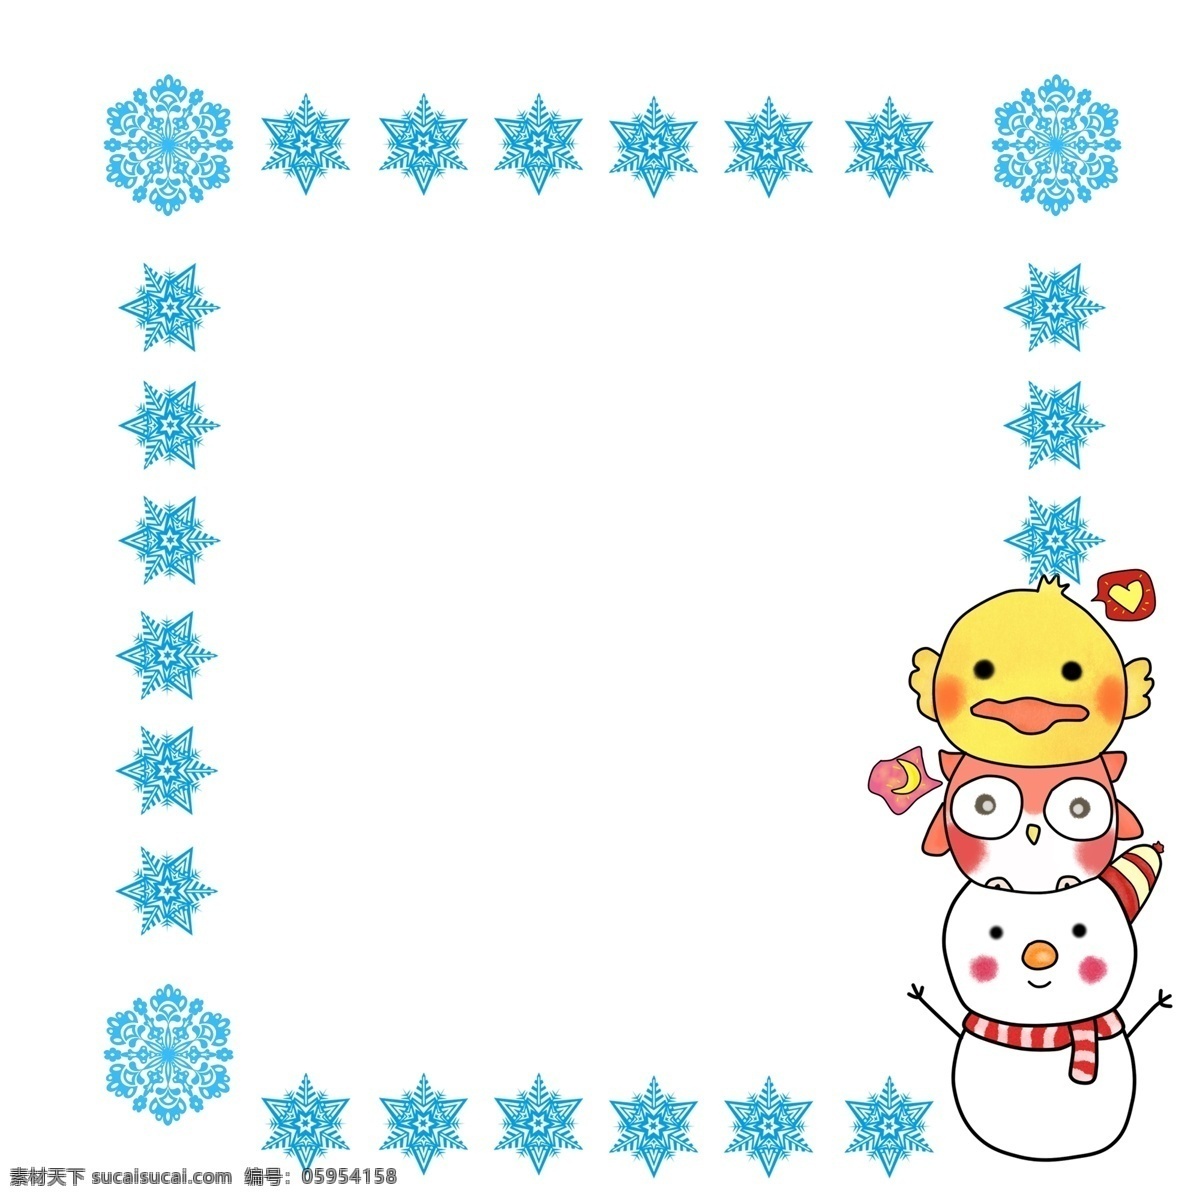 圣诞节 雪花 边框 雪人 猫头鹰 鸭子 叠 高 卡通 手绘 雪花边框 叠叠高 可爱 免扣 透明底 分层 正方形